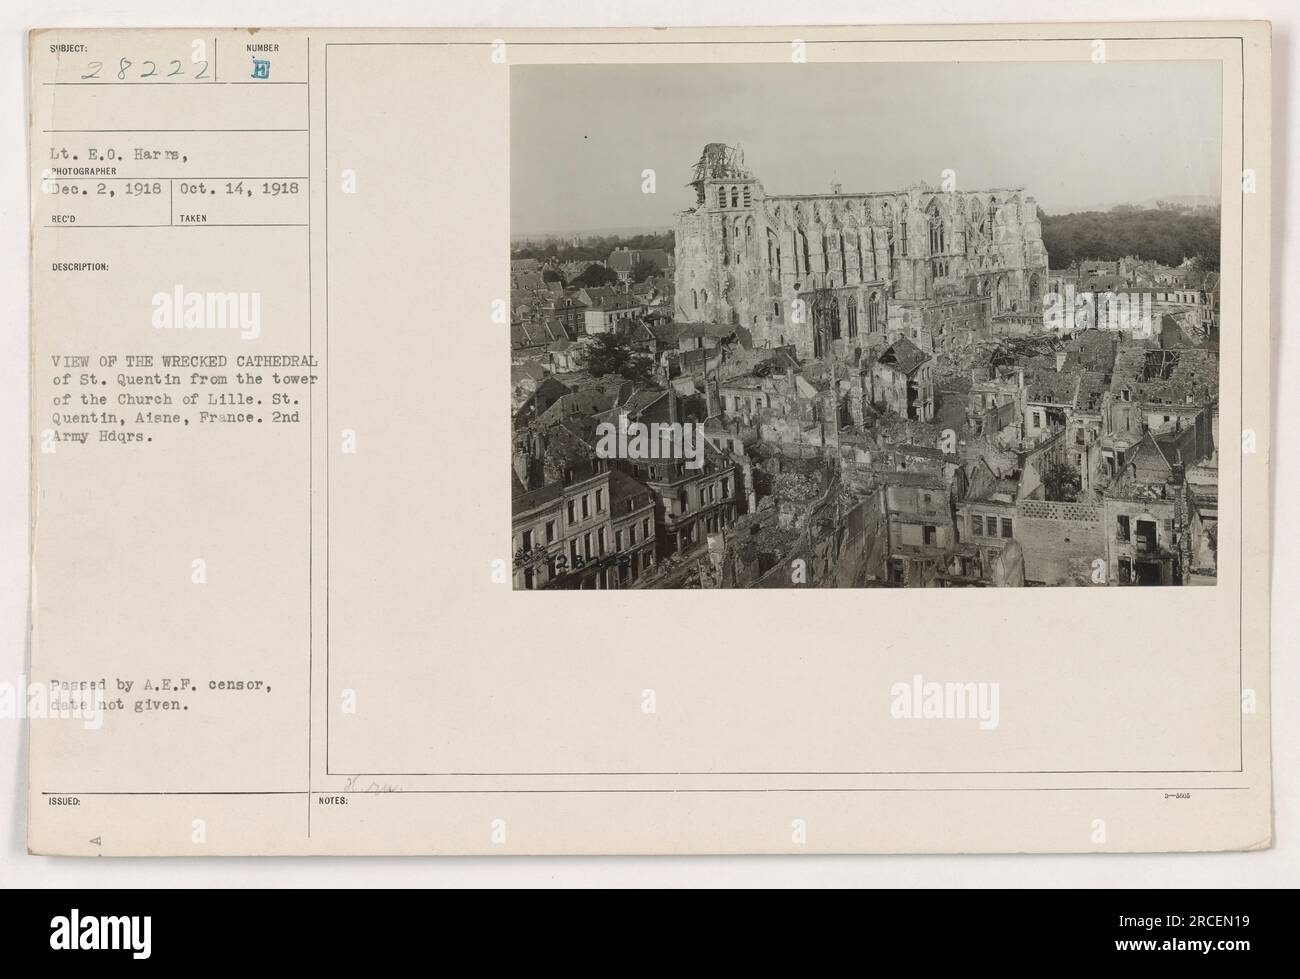 Blick auf die zerstörte Kathedrale von St. Quentin vom Turm der Kirche von Lille in St. Quentin, Aisne, Frankreich. Das Foto wurde am 14. Oktober 1918 von LT. E.O. Harris aufgenommen. Es wurde als Reconnaissance #28222 herausgegeben und vom A.E.F.-Zensor genehmigt. Das Bild zeigt die erheblichen Verwüstungen, die während des Ersten Weltkriegs verursacht wurden." Stockfoto